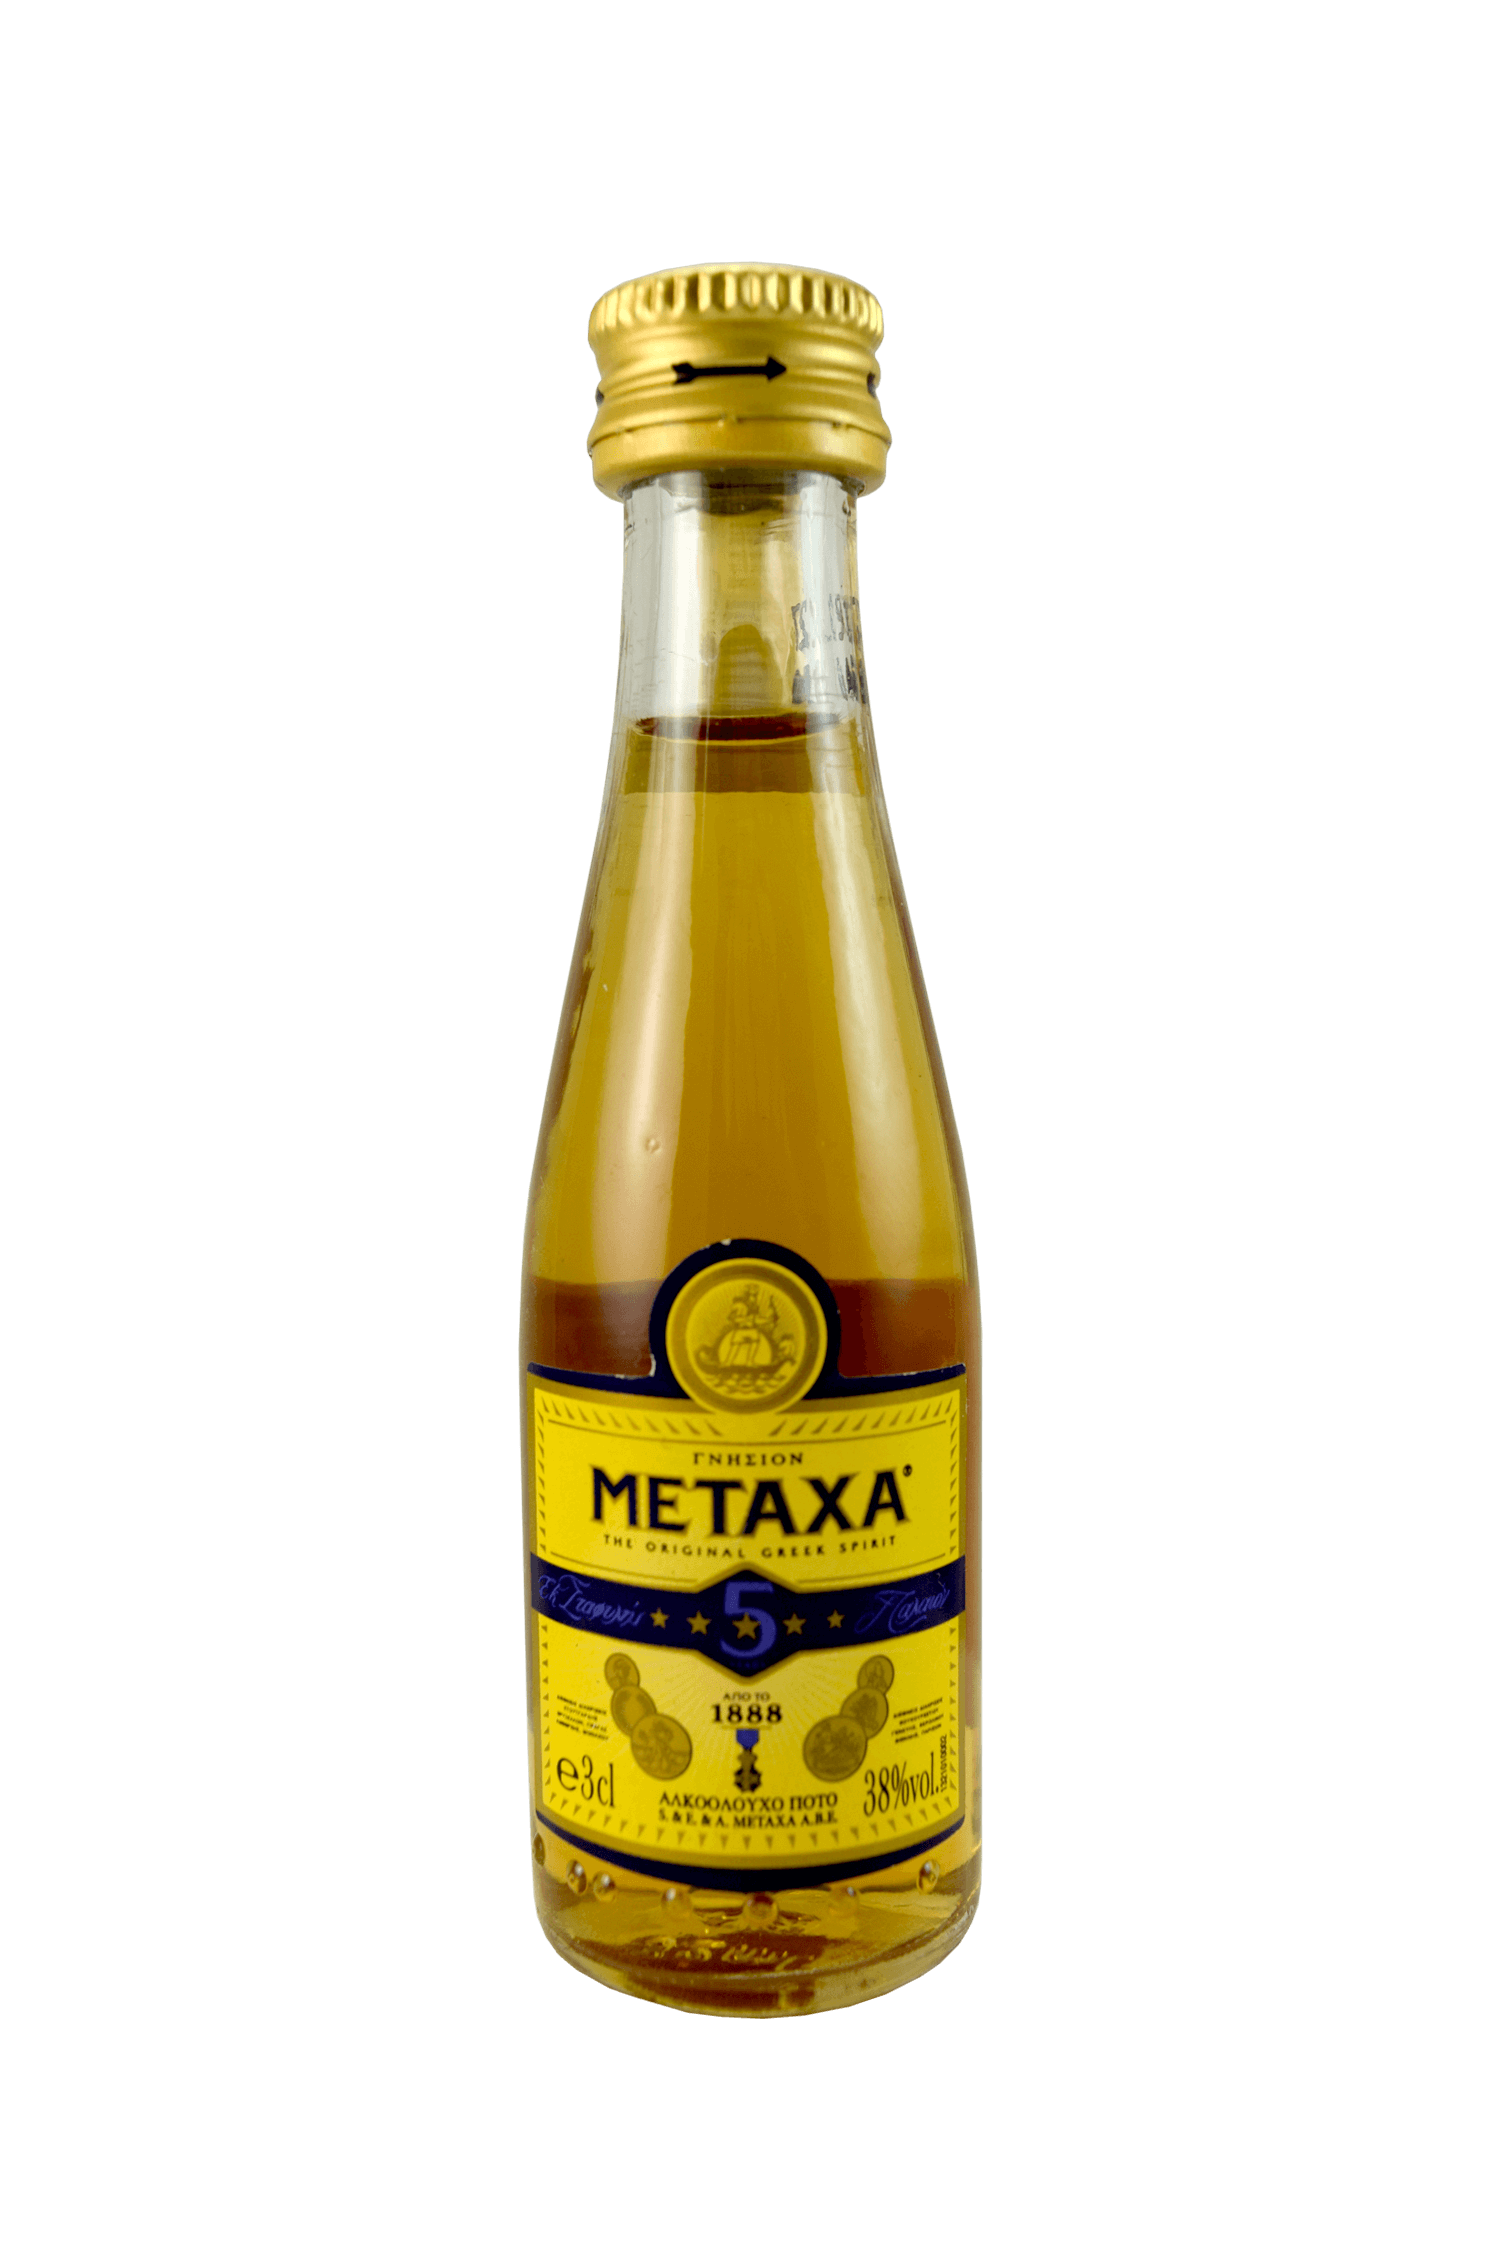 Metaxa The Original Greek Spirit